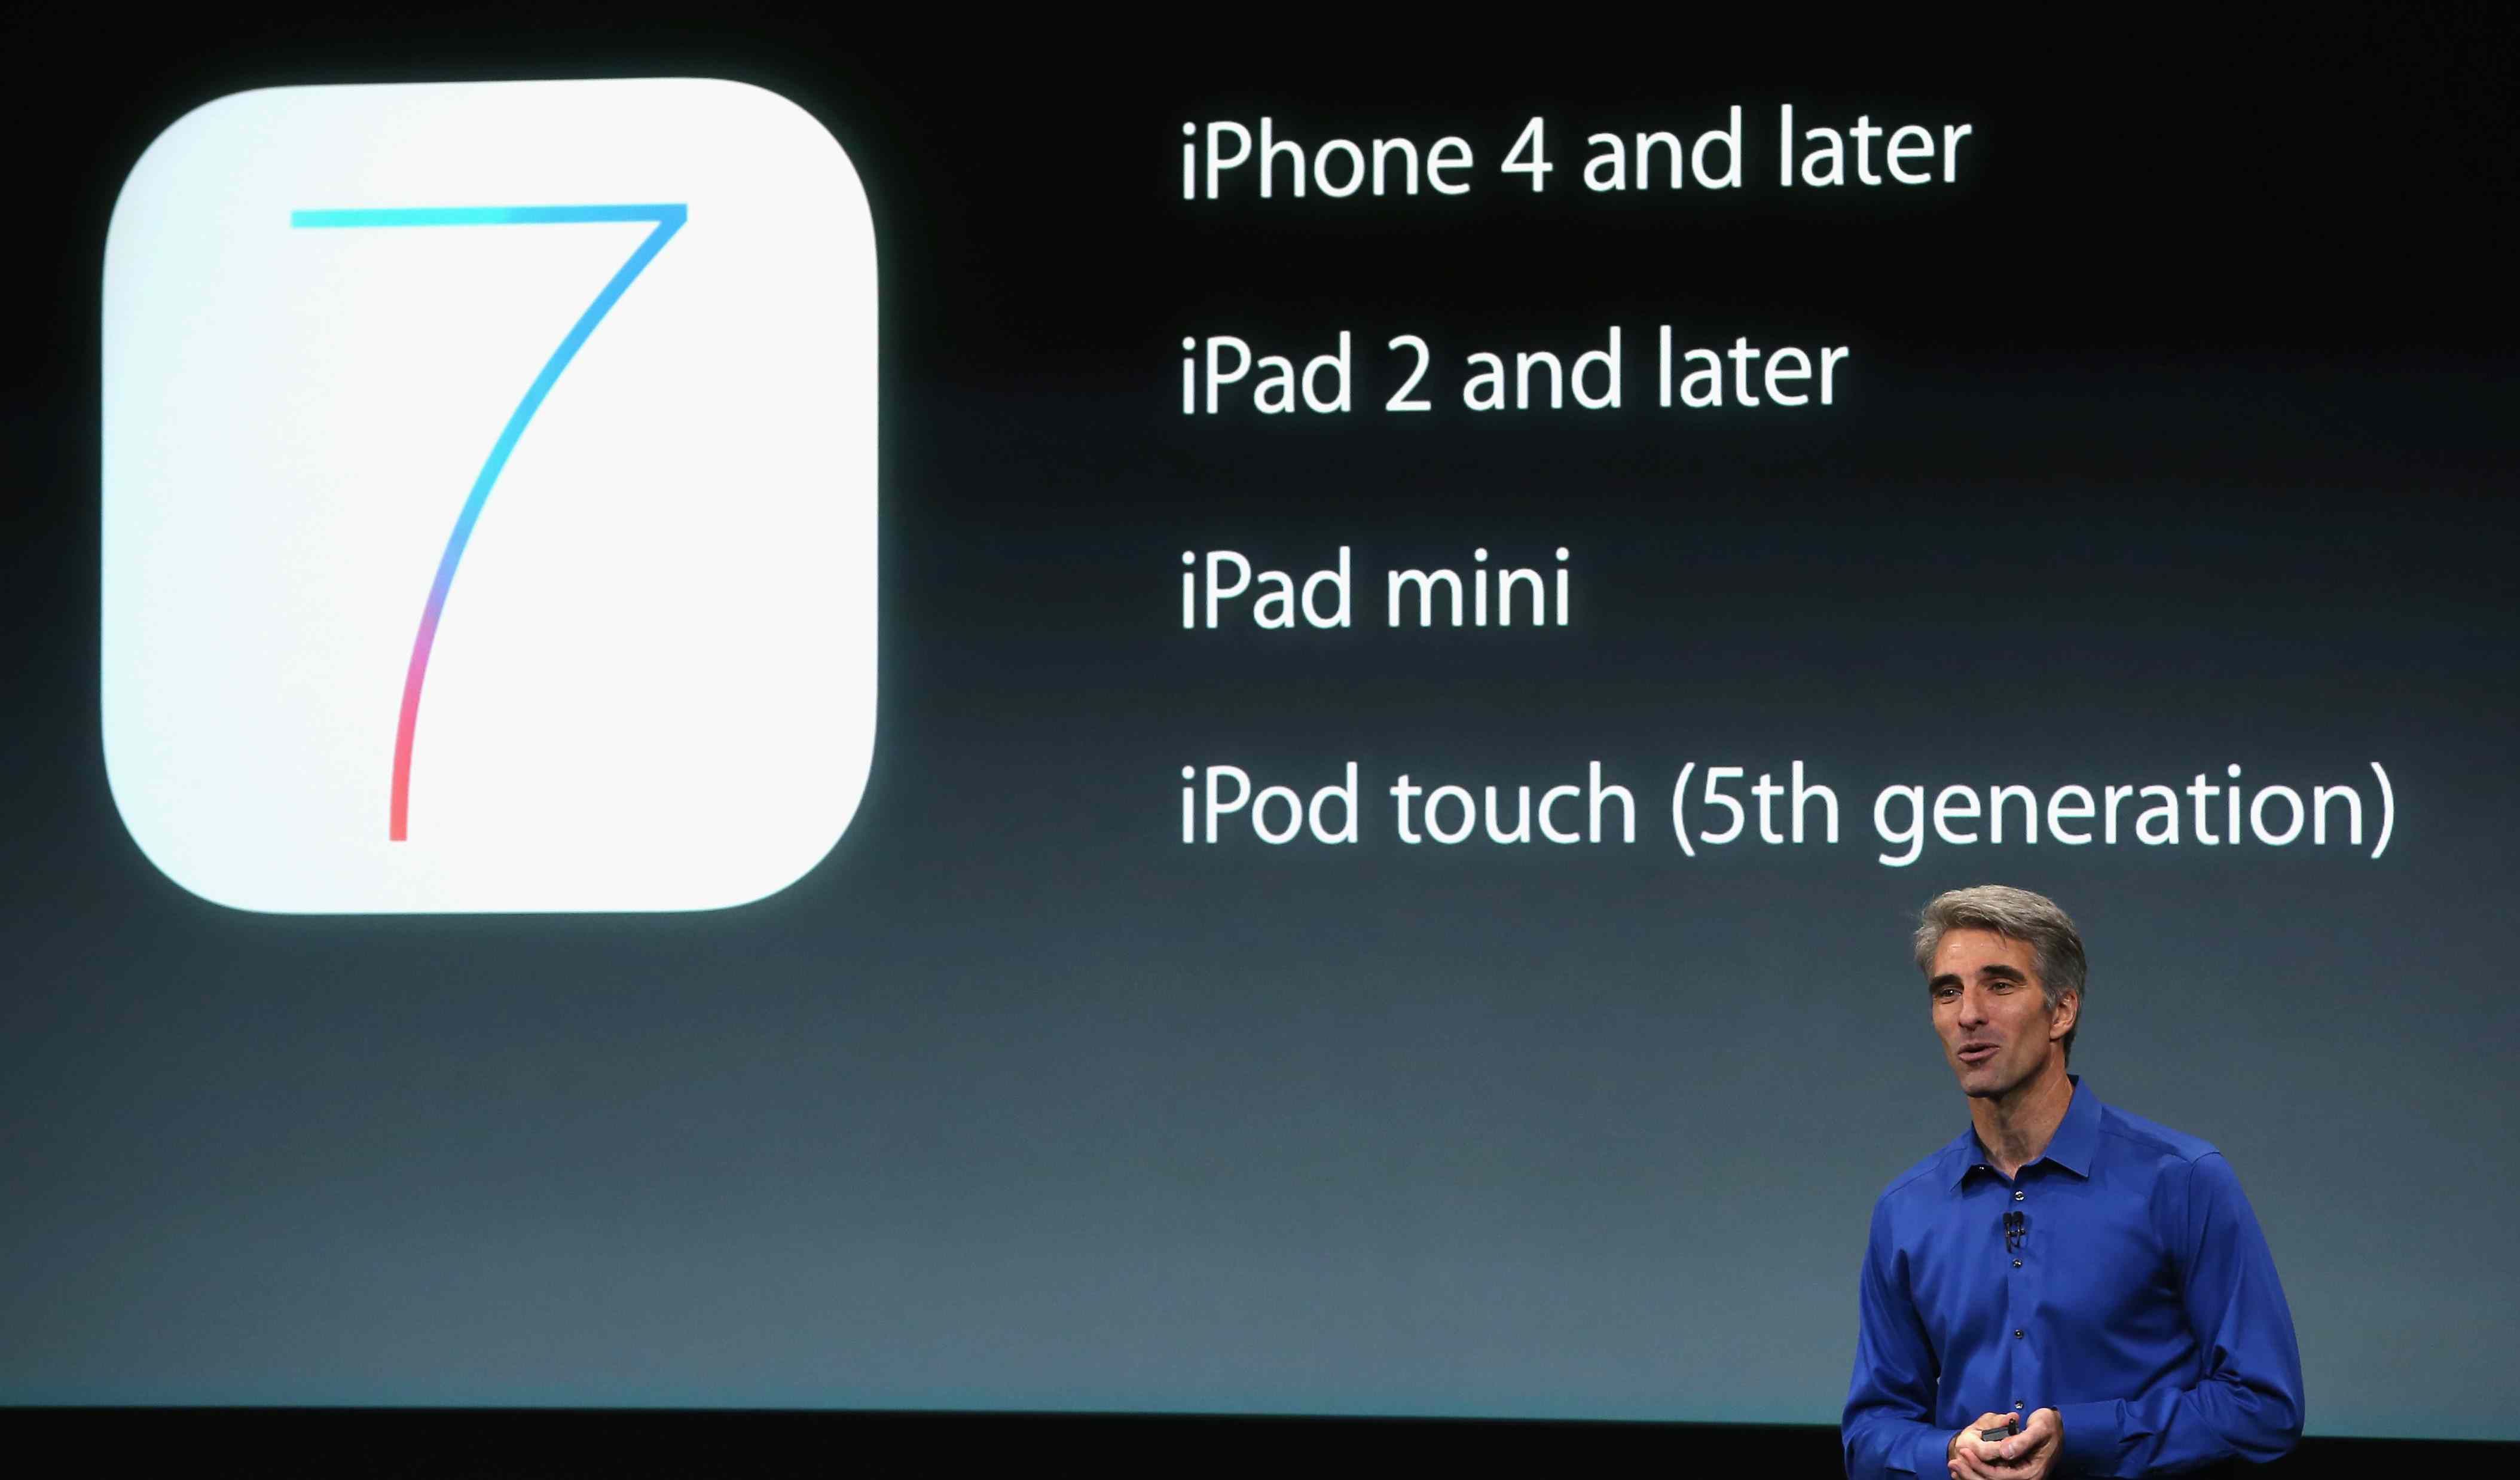 Старший вице-президент Apple по разработке программного обеспечения Крейг Федериги рассказывает об iOS 7 на сцене во время анонса продукта Apple в кампусе Apple 10 сентября 2013 г.